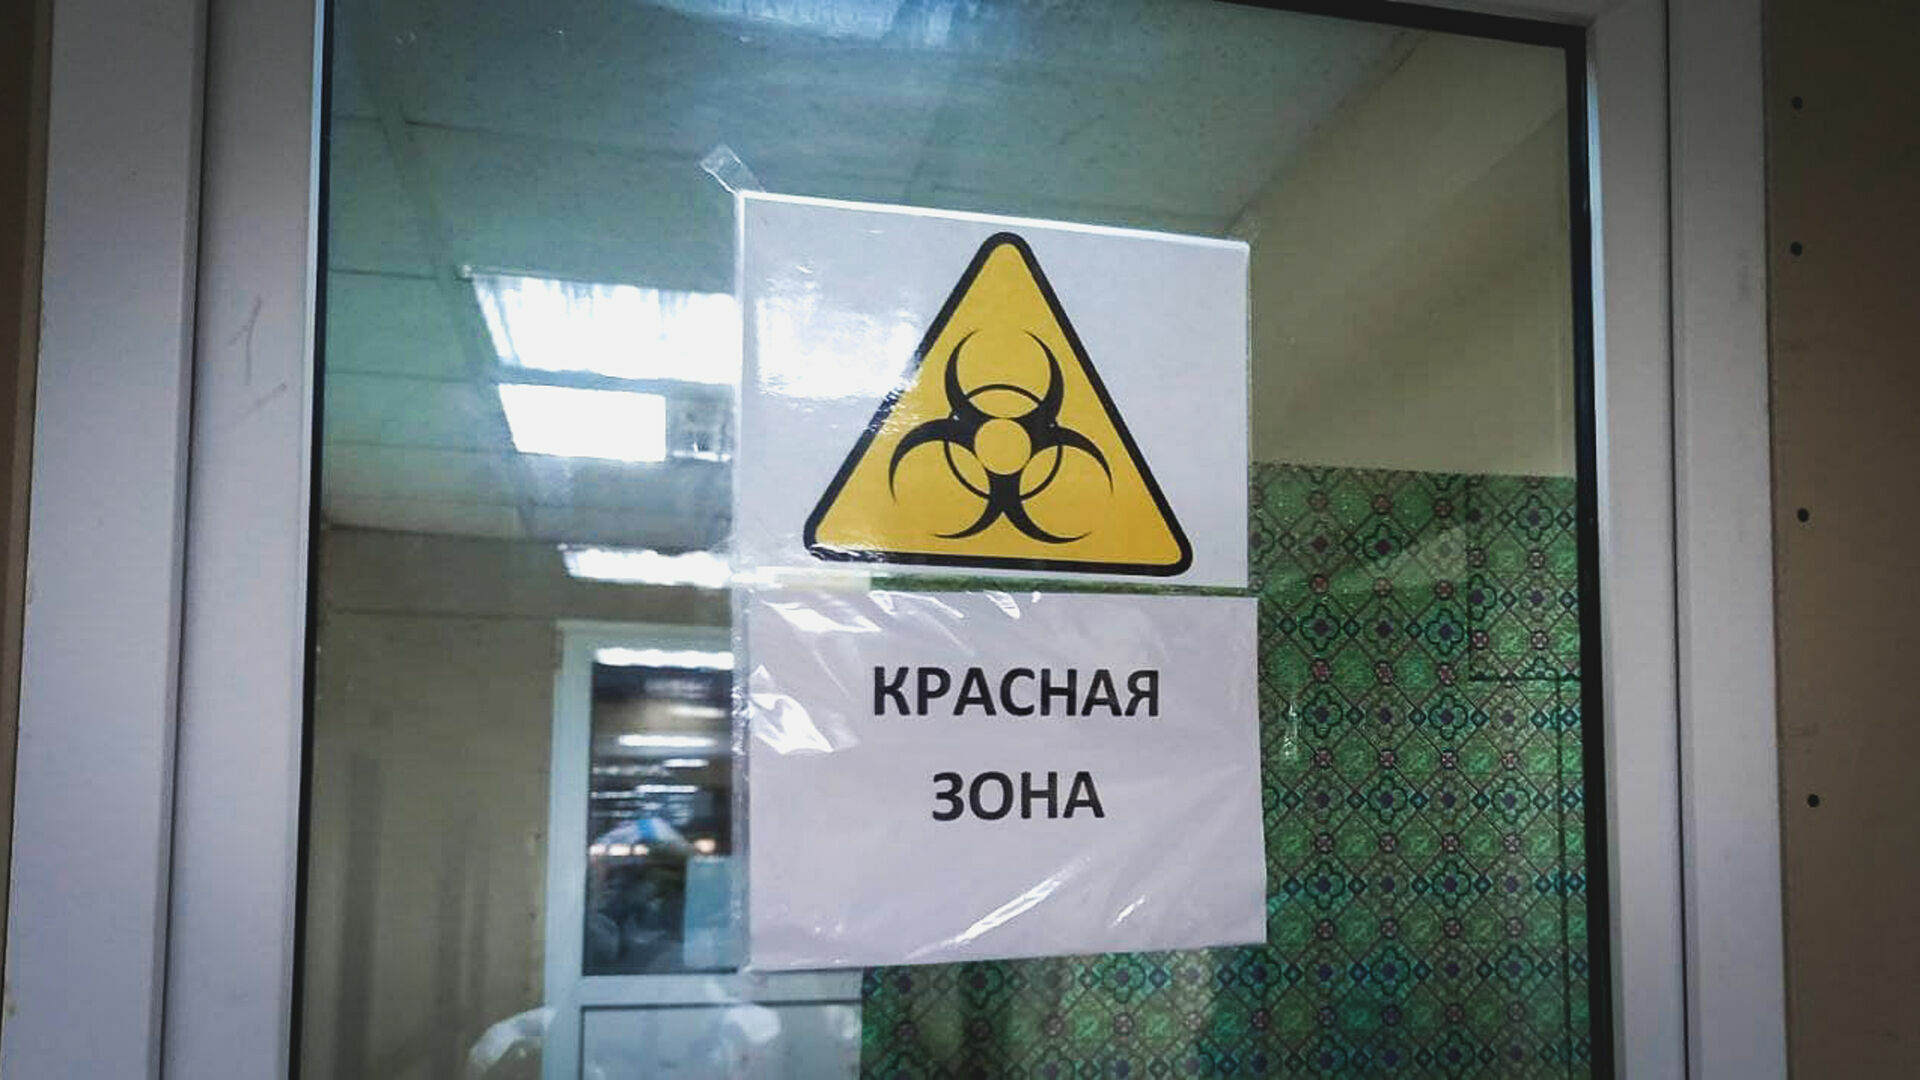 25 случаев заражения омикроном выявлены в Нижегородской области